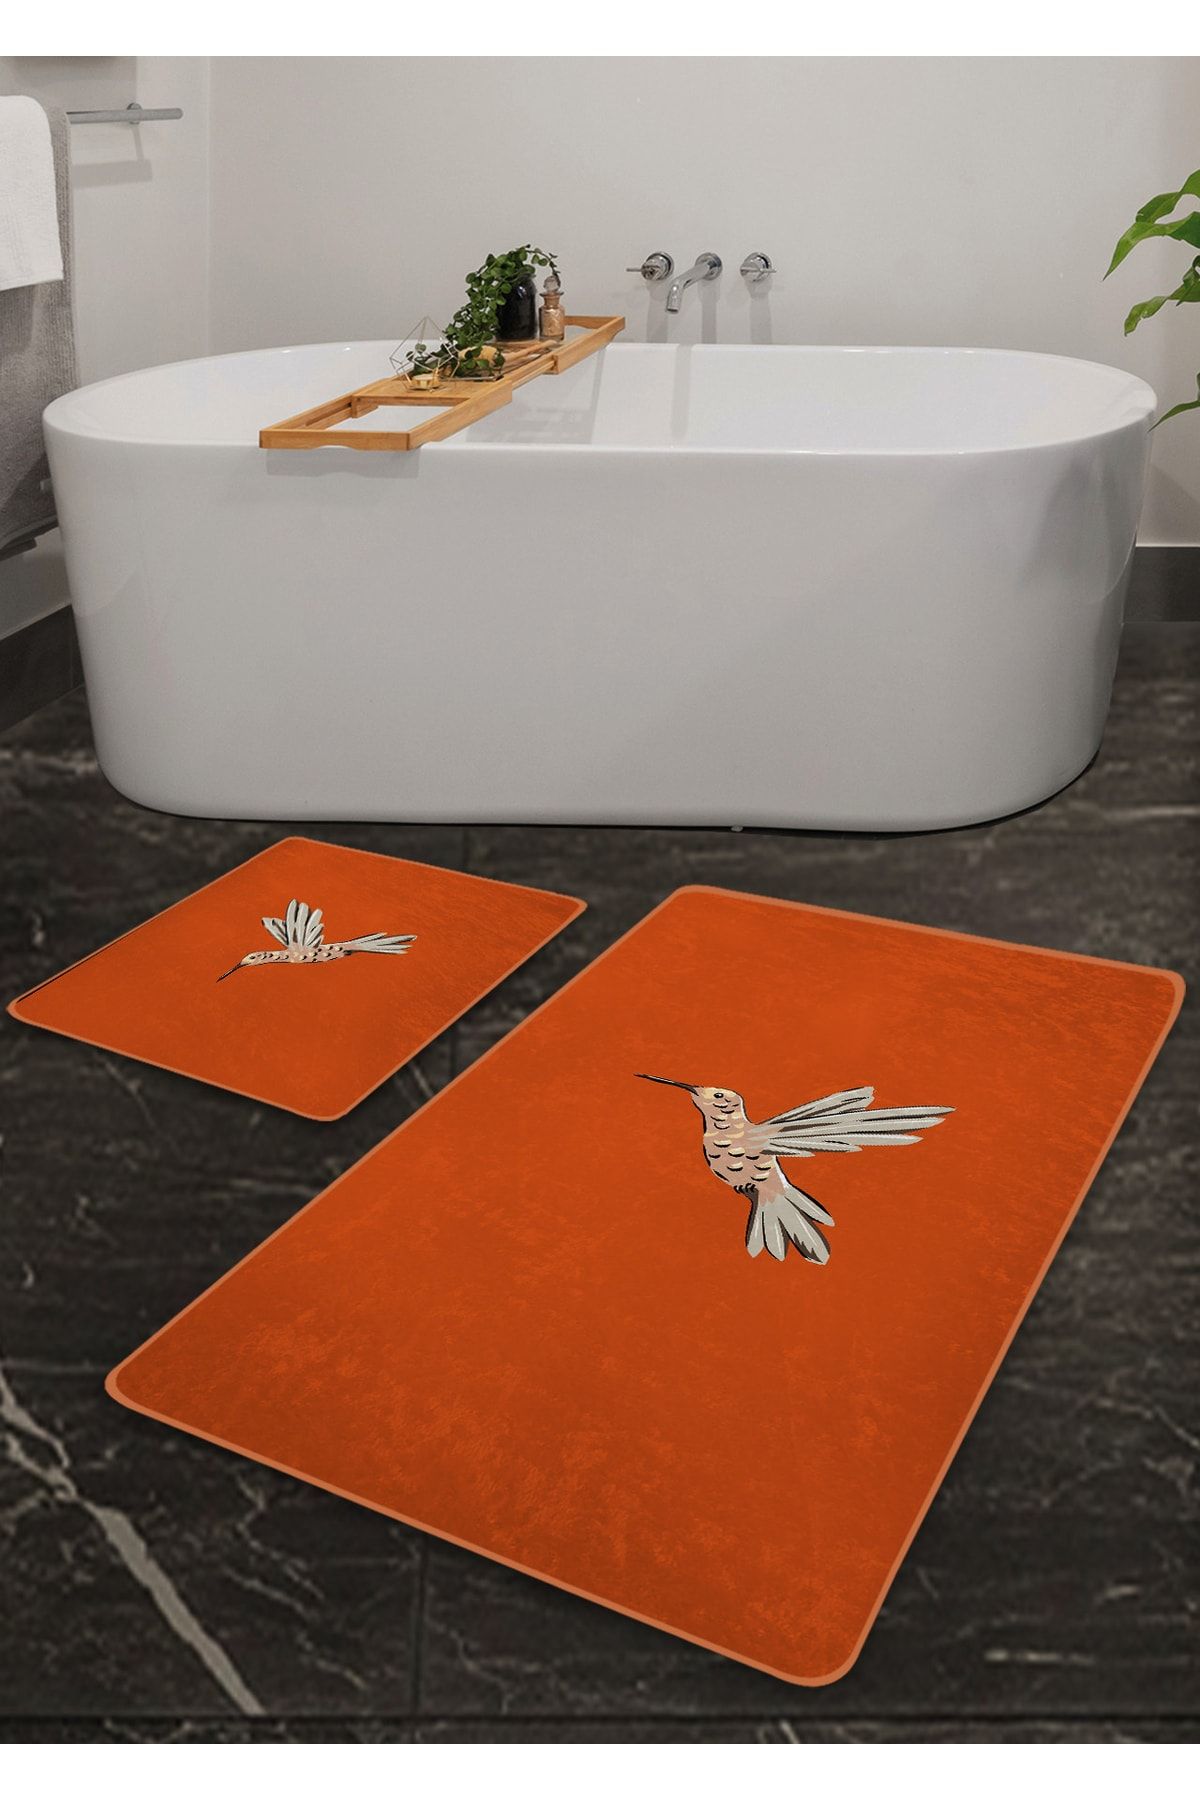 Pilloveland Kaymaz Taban Yıkanabilir 2’li Banyo Paspası - Hibiskus Kuş Desenli 60*100 Cm - 50*60 Cm